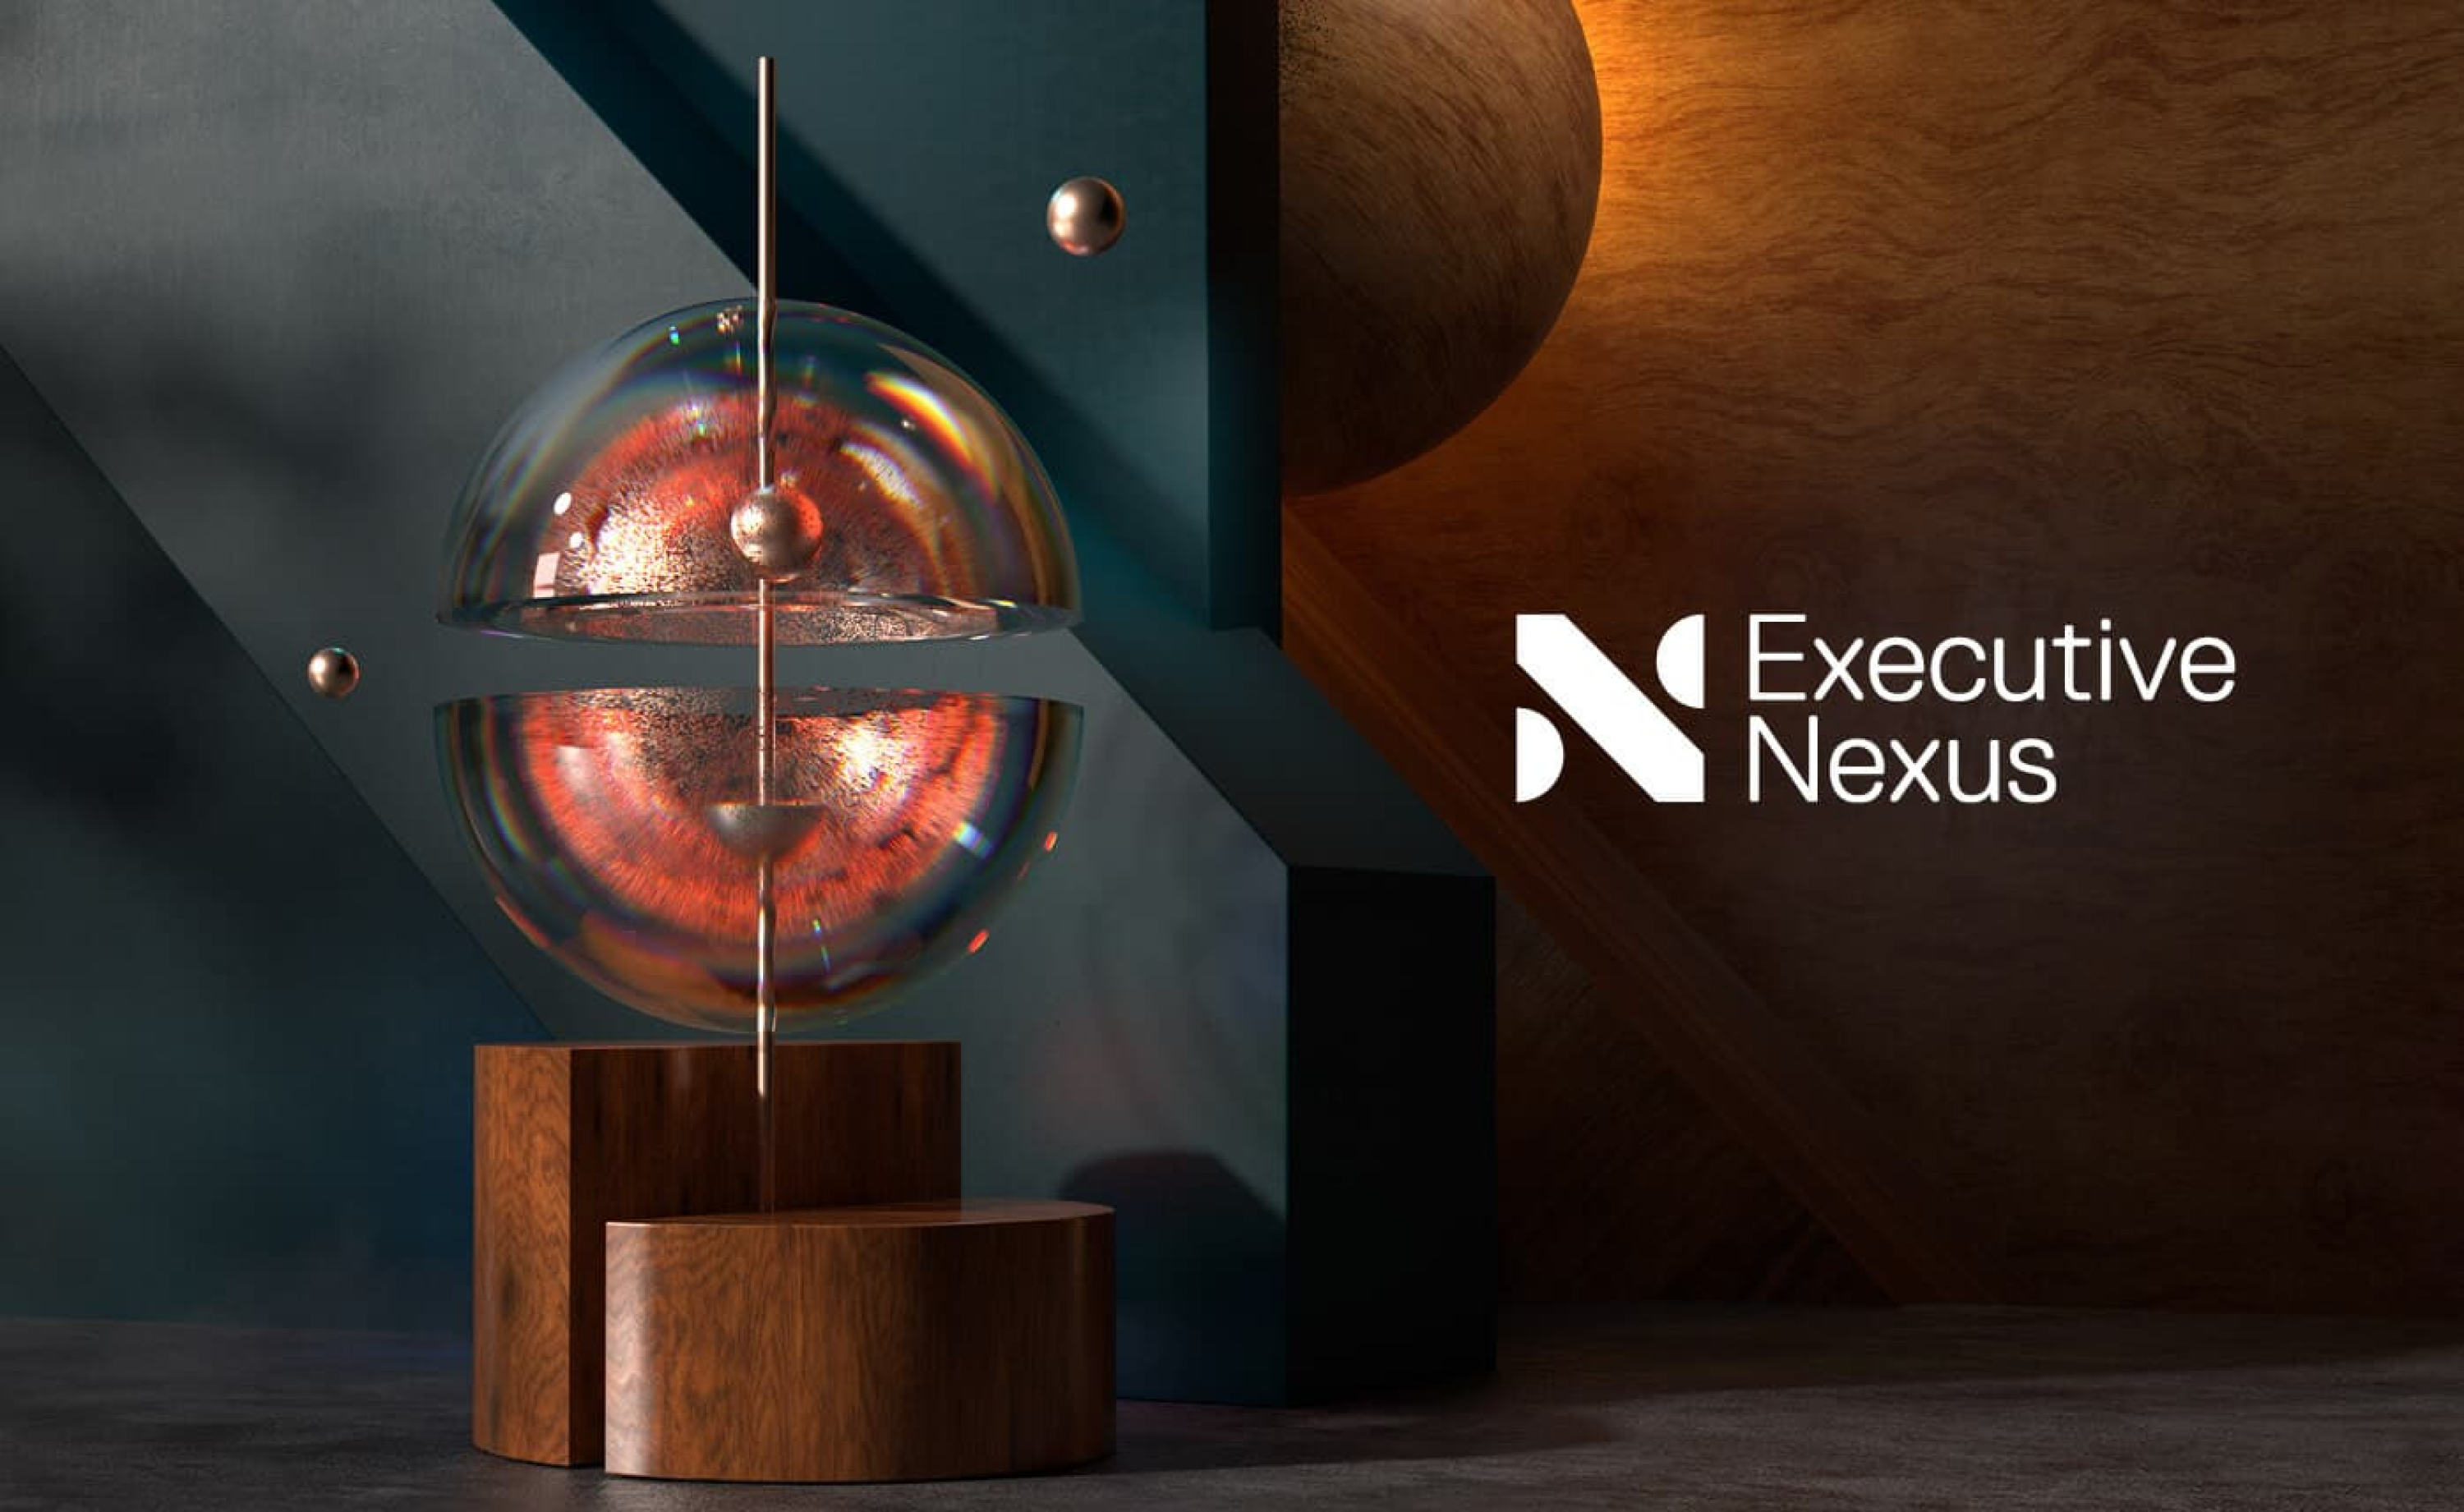 Executive Nexus CGI by Ensemble.